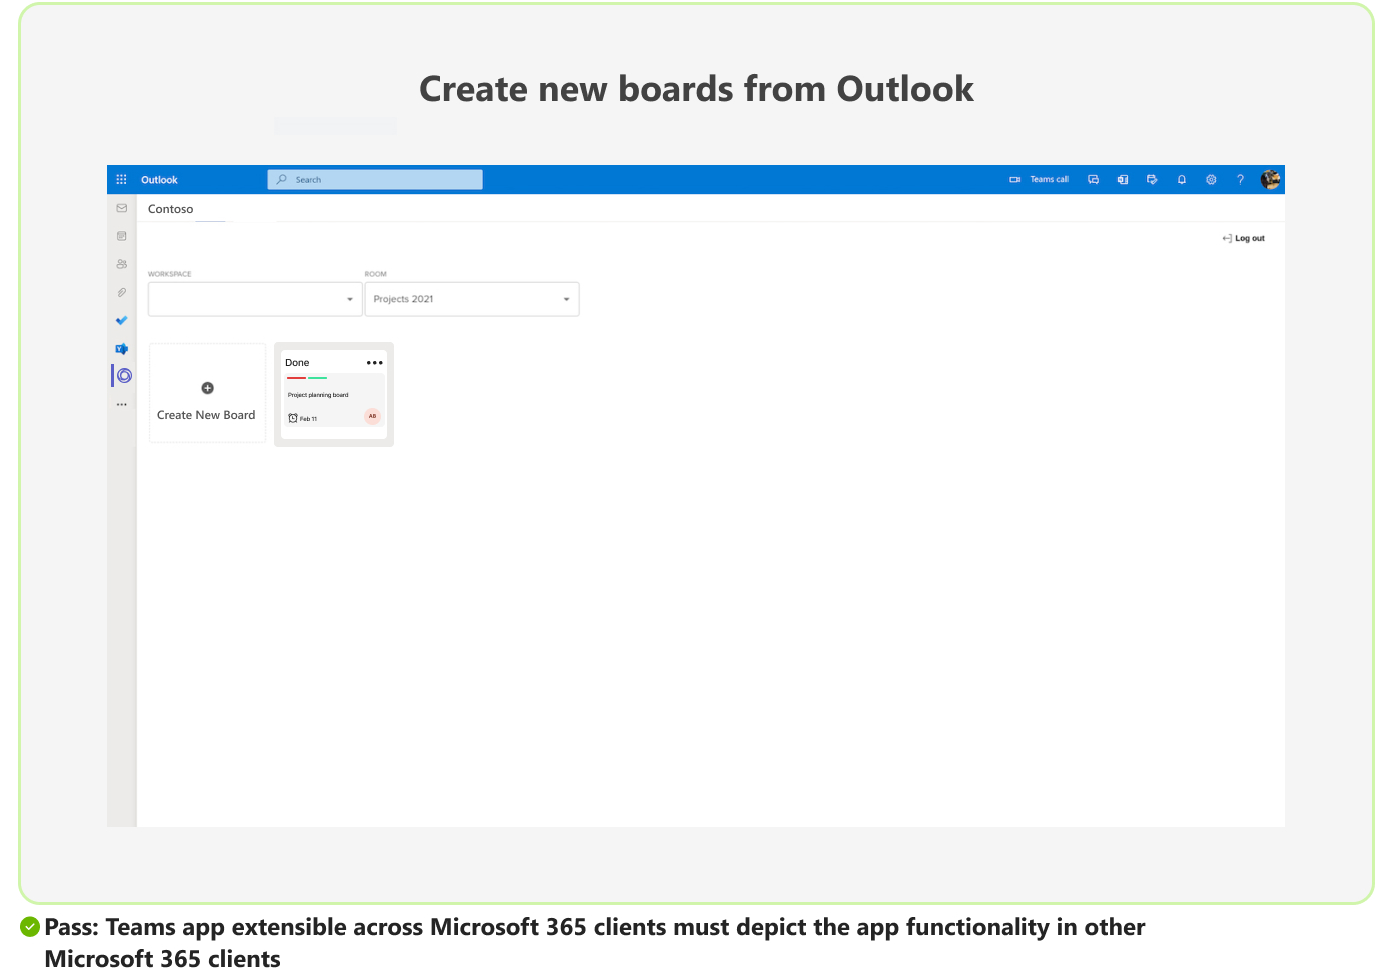 Captura de ecrã a mostrar o cenário transmitido da funcionalidade da aplicação Teams em clientes MS 365.